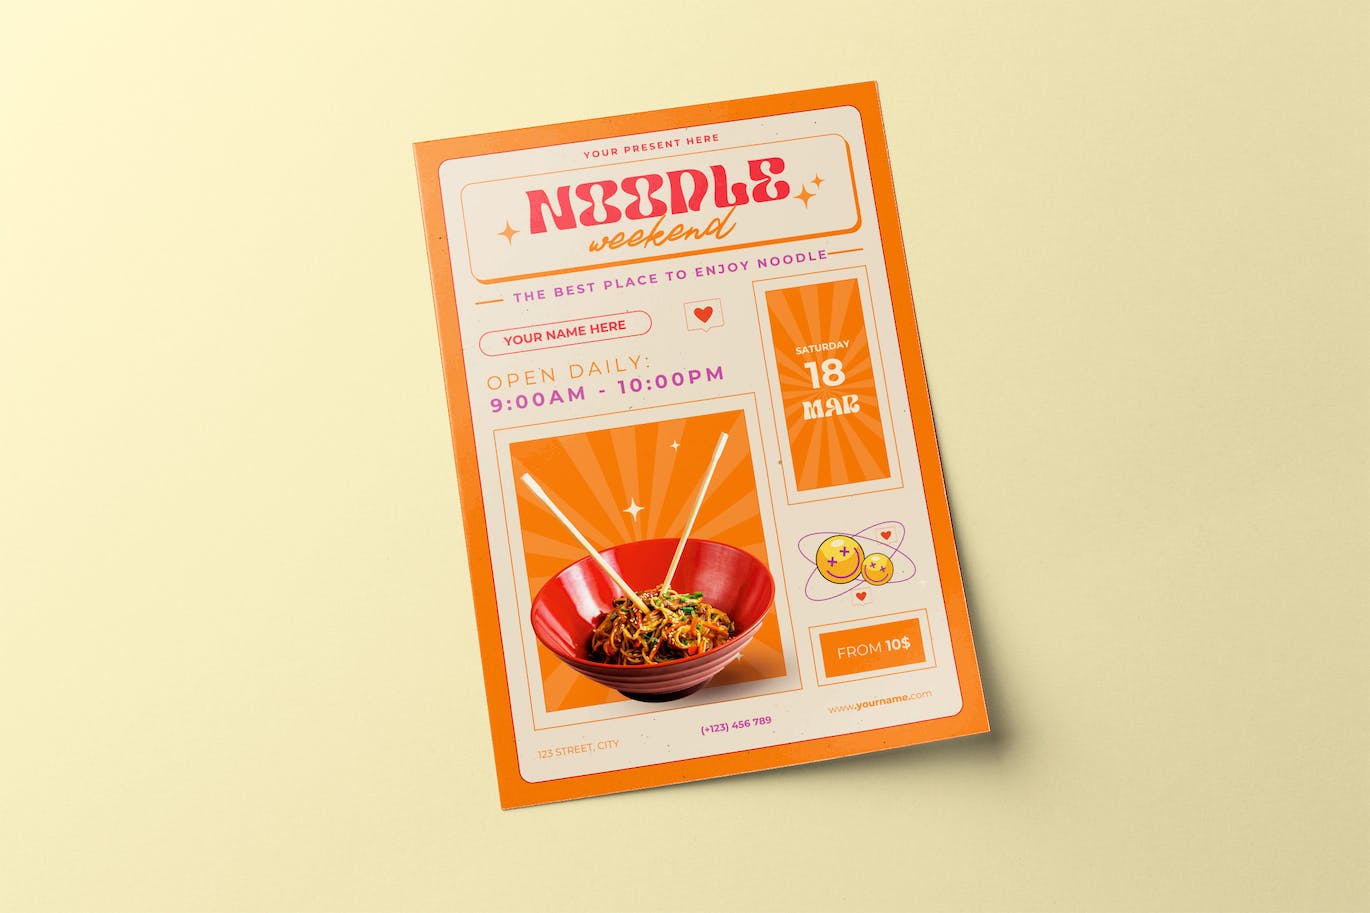 面条节食品传单素材 Noodle Festival Flyer 设计素材 第1张